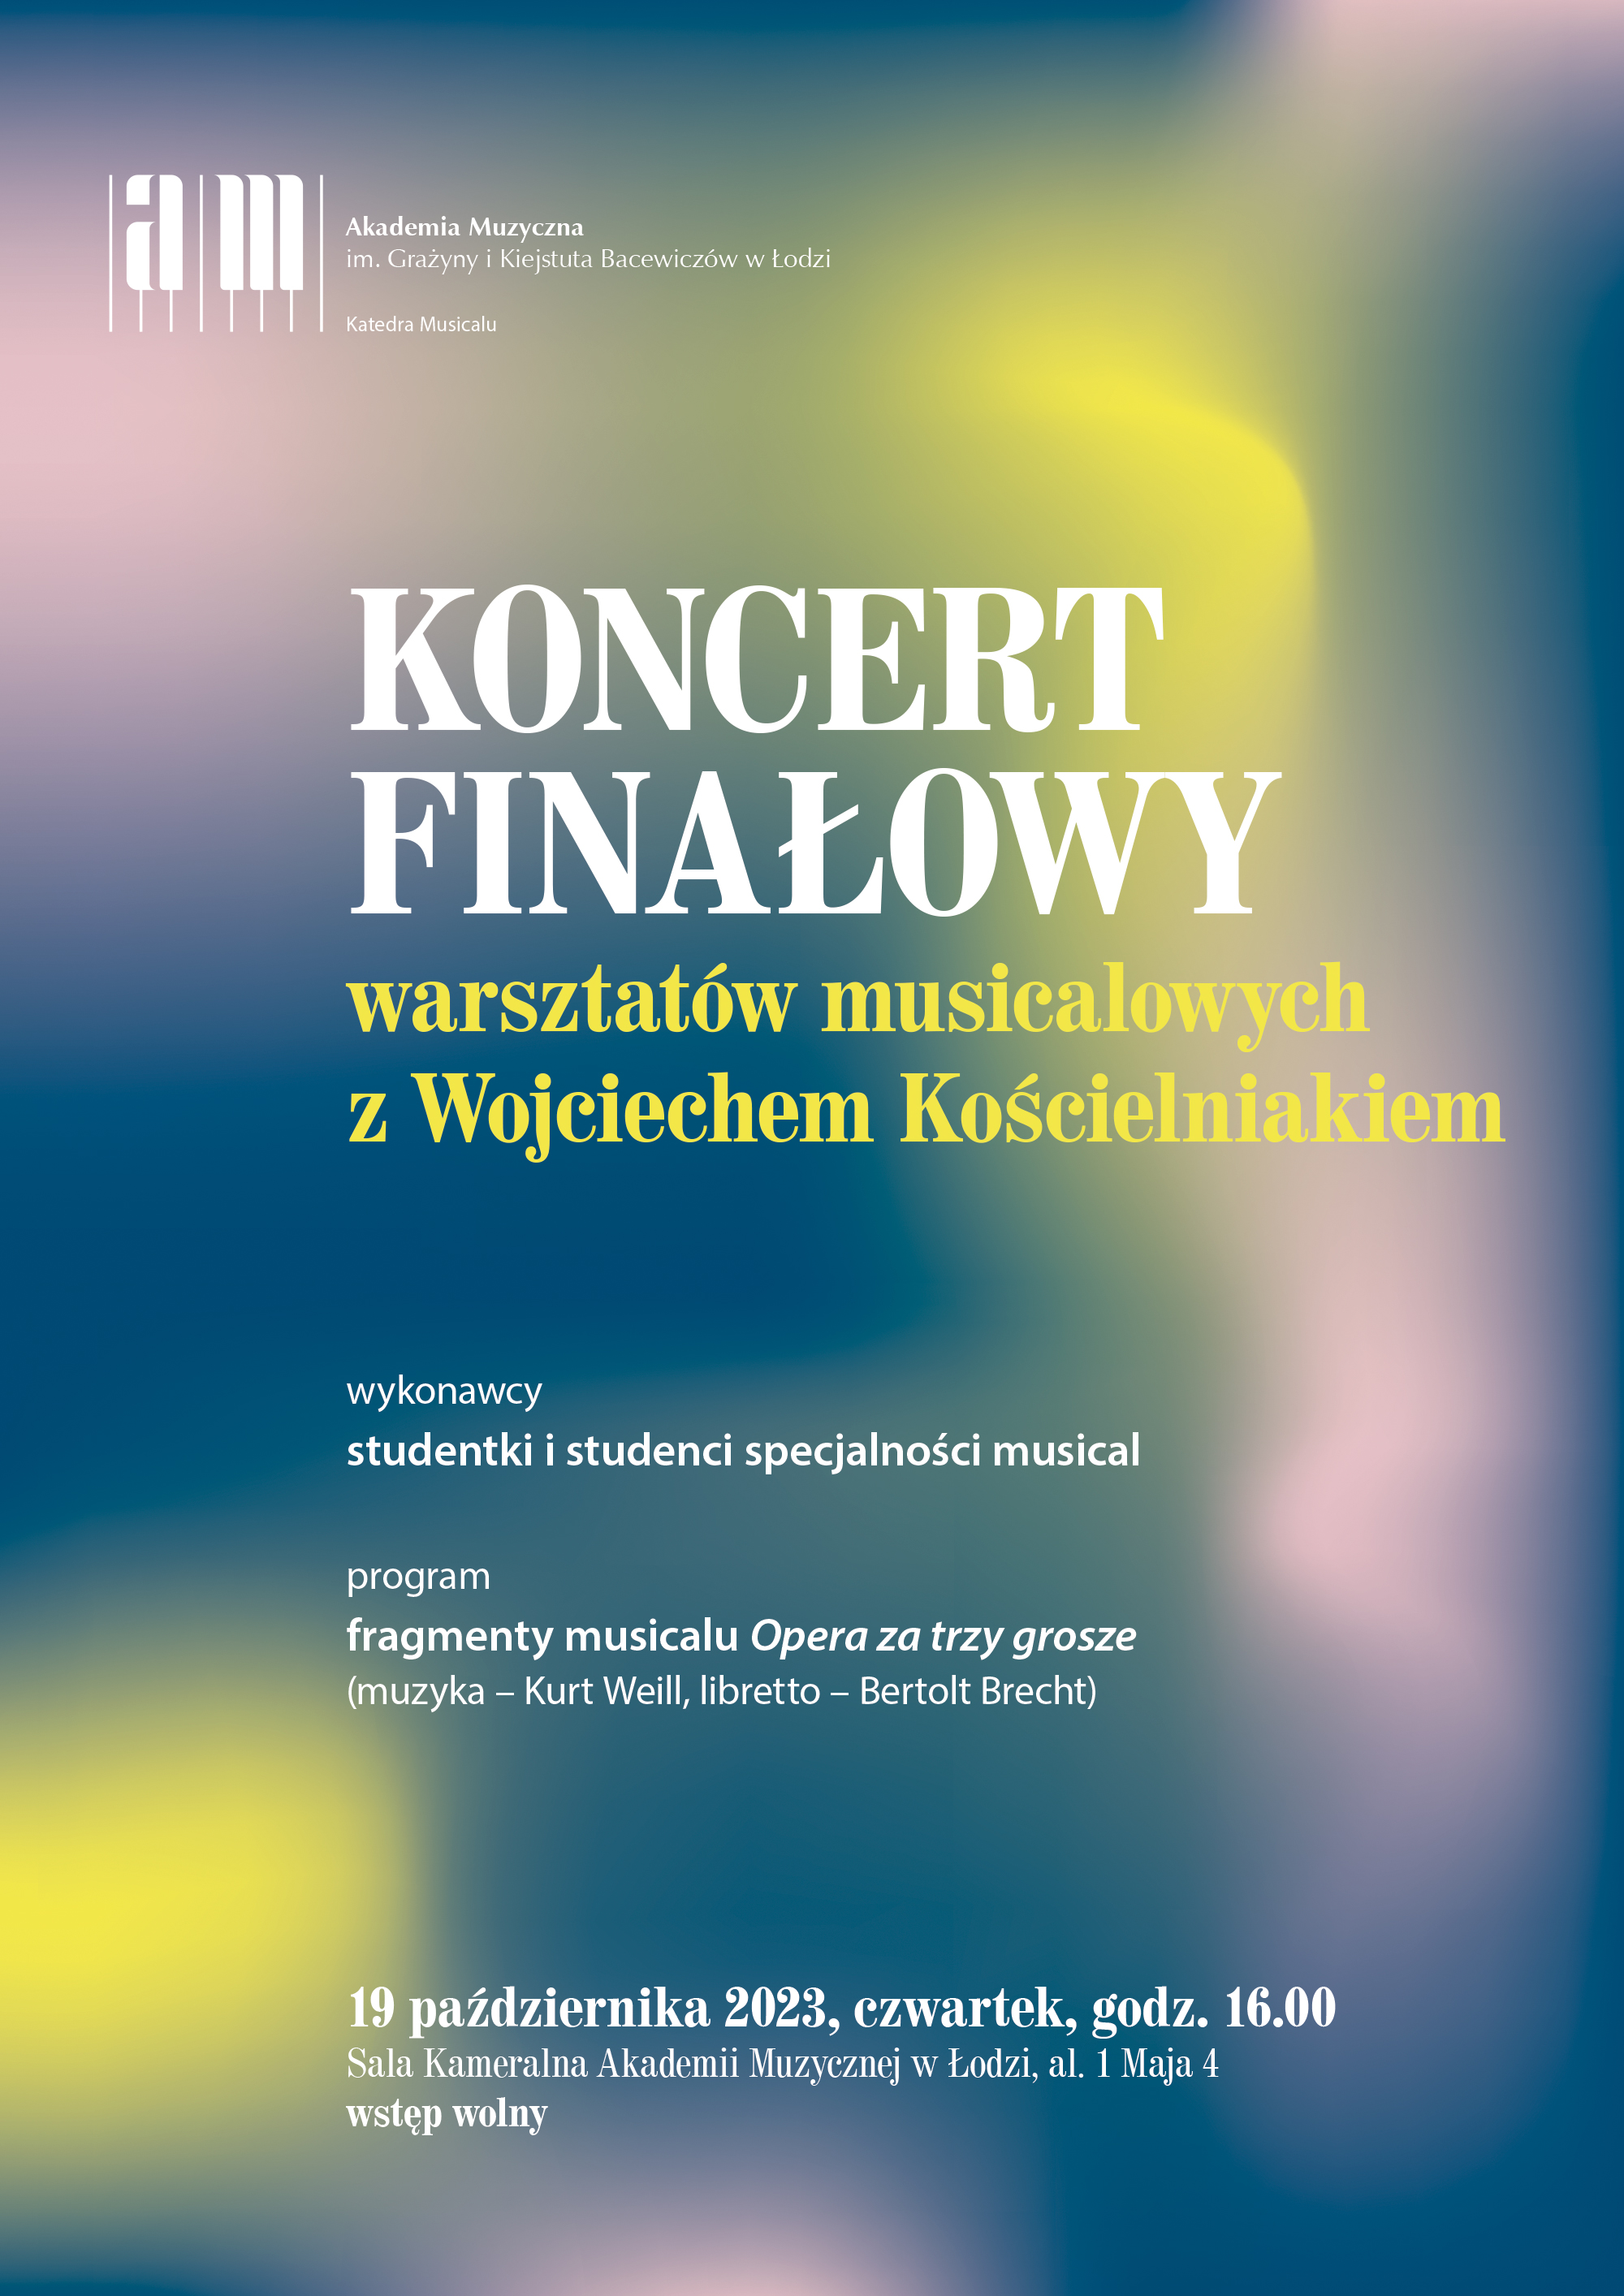 Koncert finałowy warsztatów musicalowych z Wojciechem Kościelniakiem